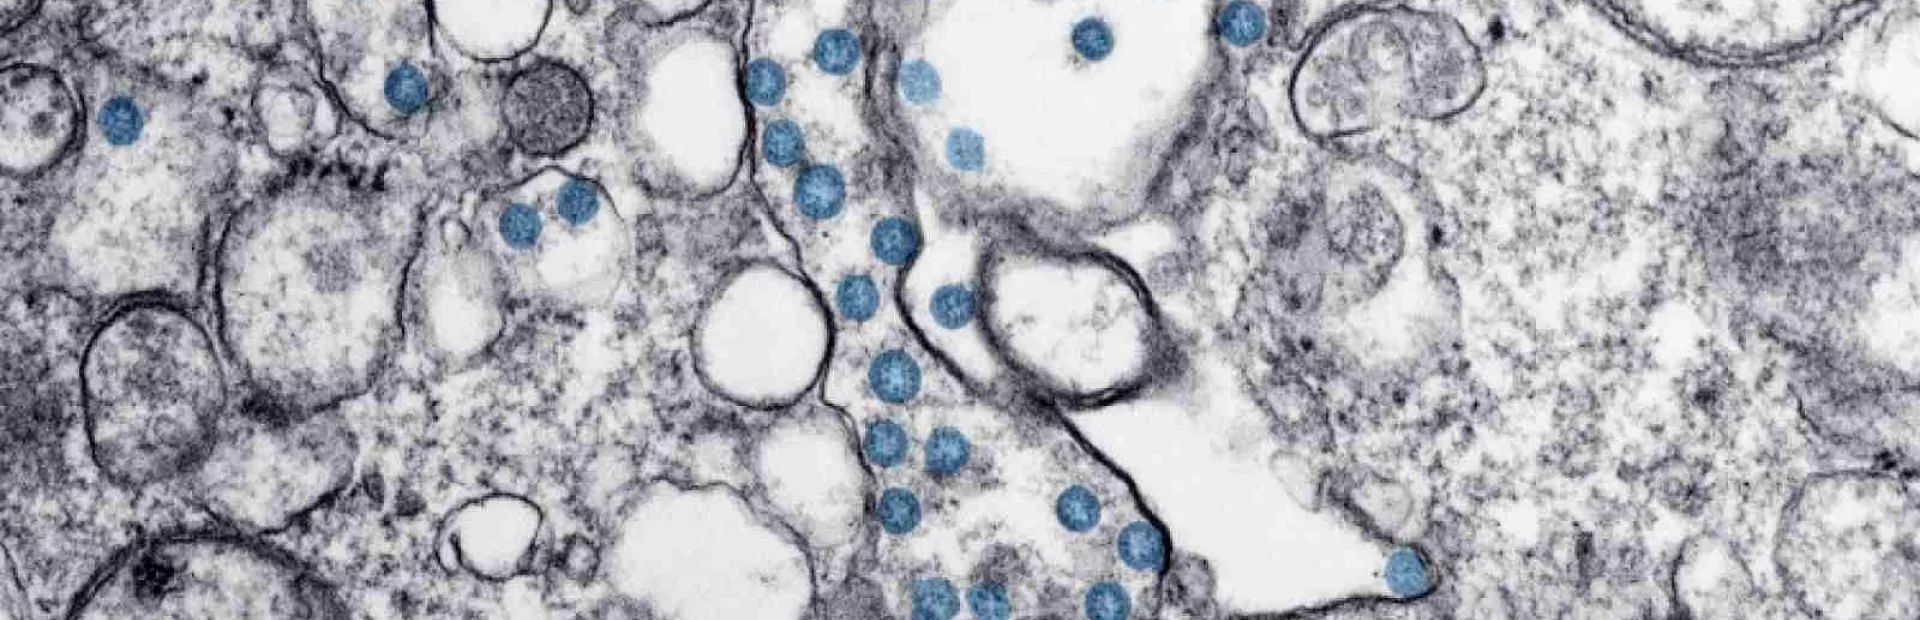 coronavirus-microscope-image